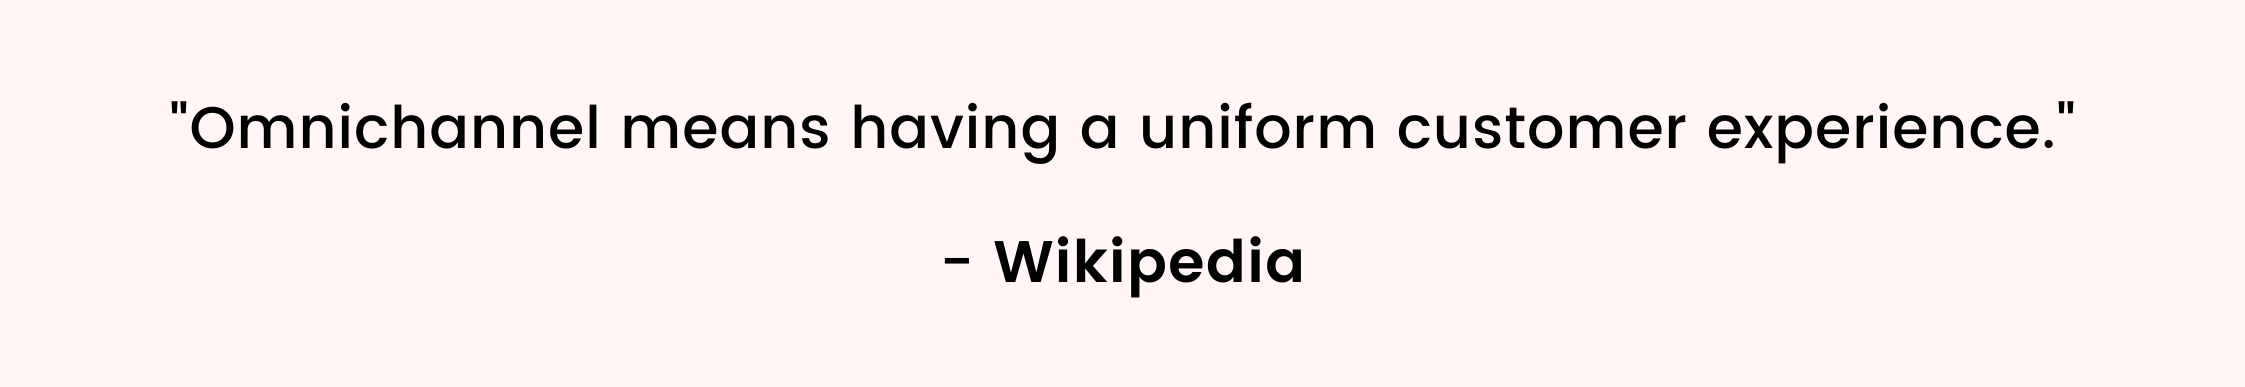 omnichannel wikipedia